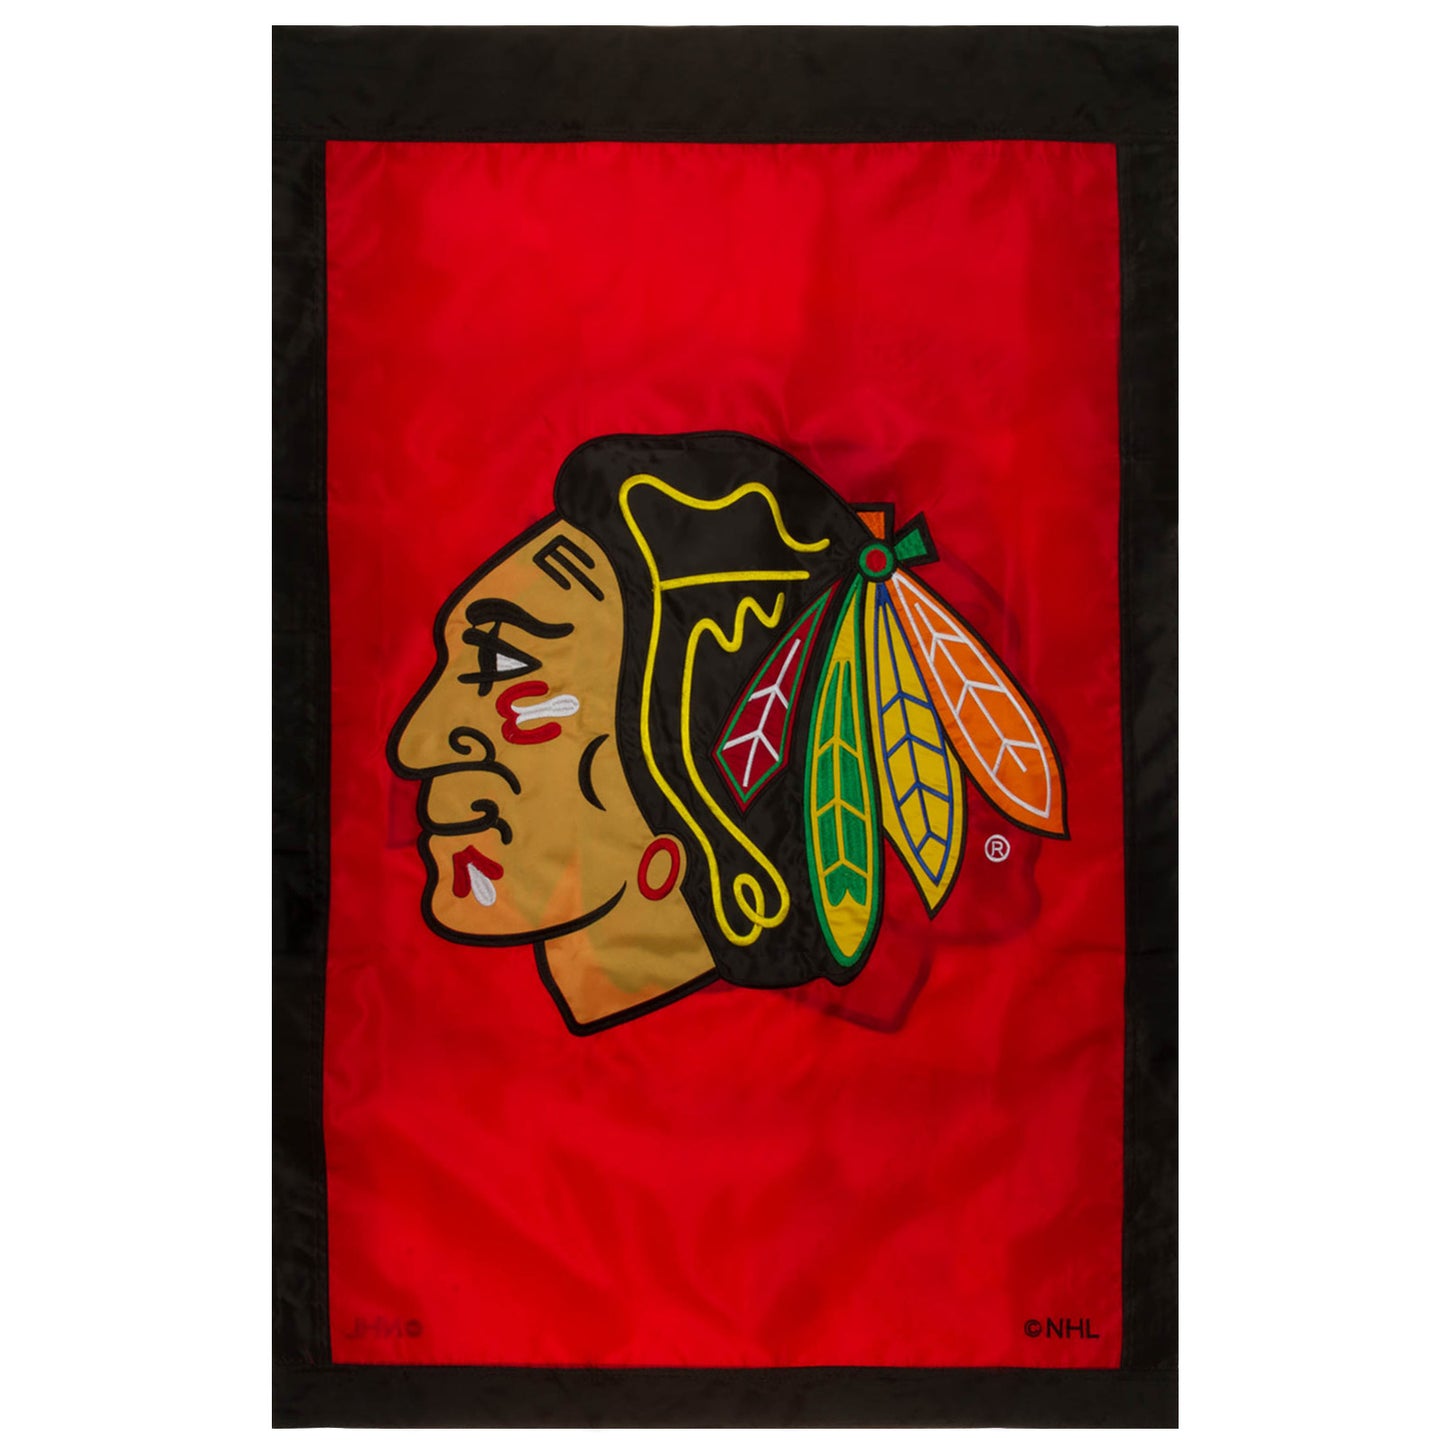 Chicago Blackhawks 28" x 44" Applique Decorative Vertical Flag